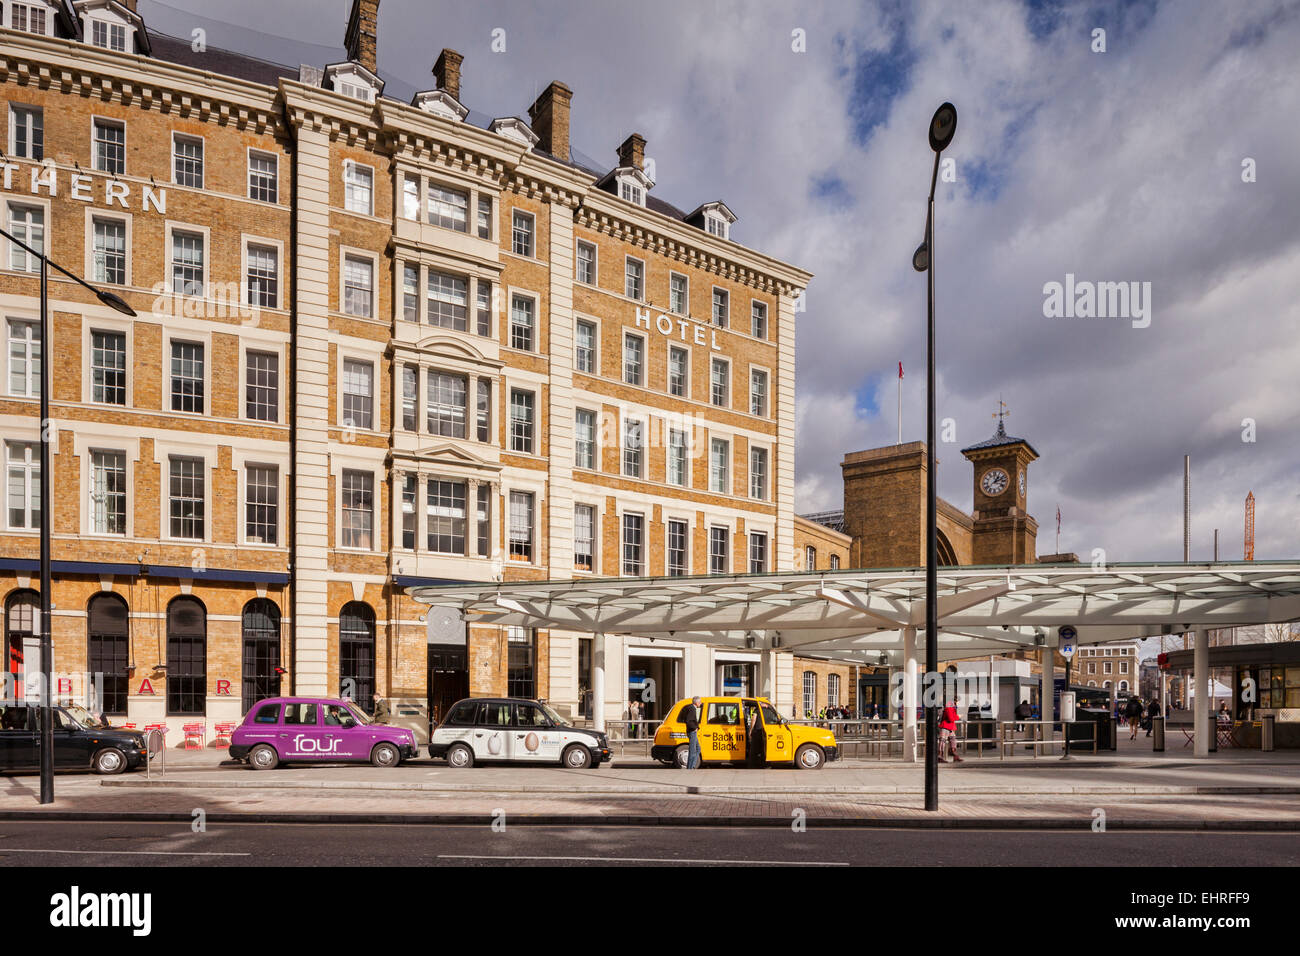 Gran Hotel Norte y Londres, taxis, King's Cross, Londres, Inglaterra, Reino Unido. Foto de stock